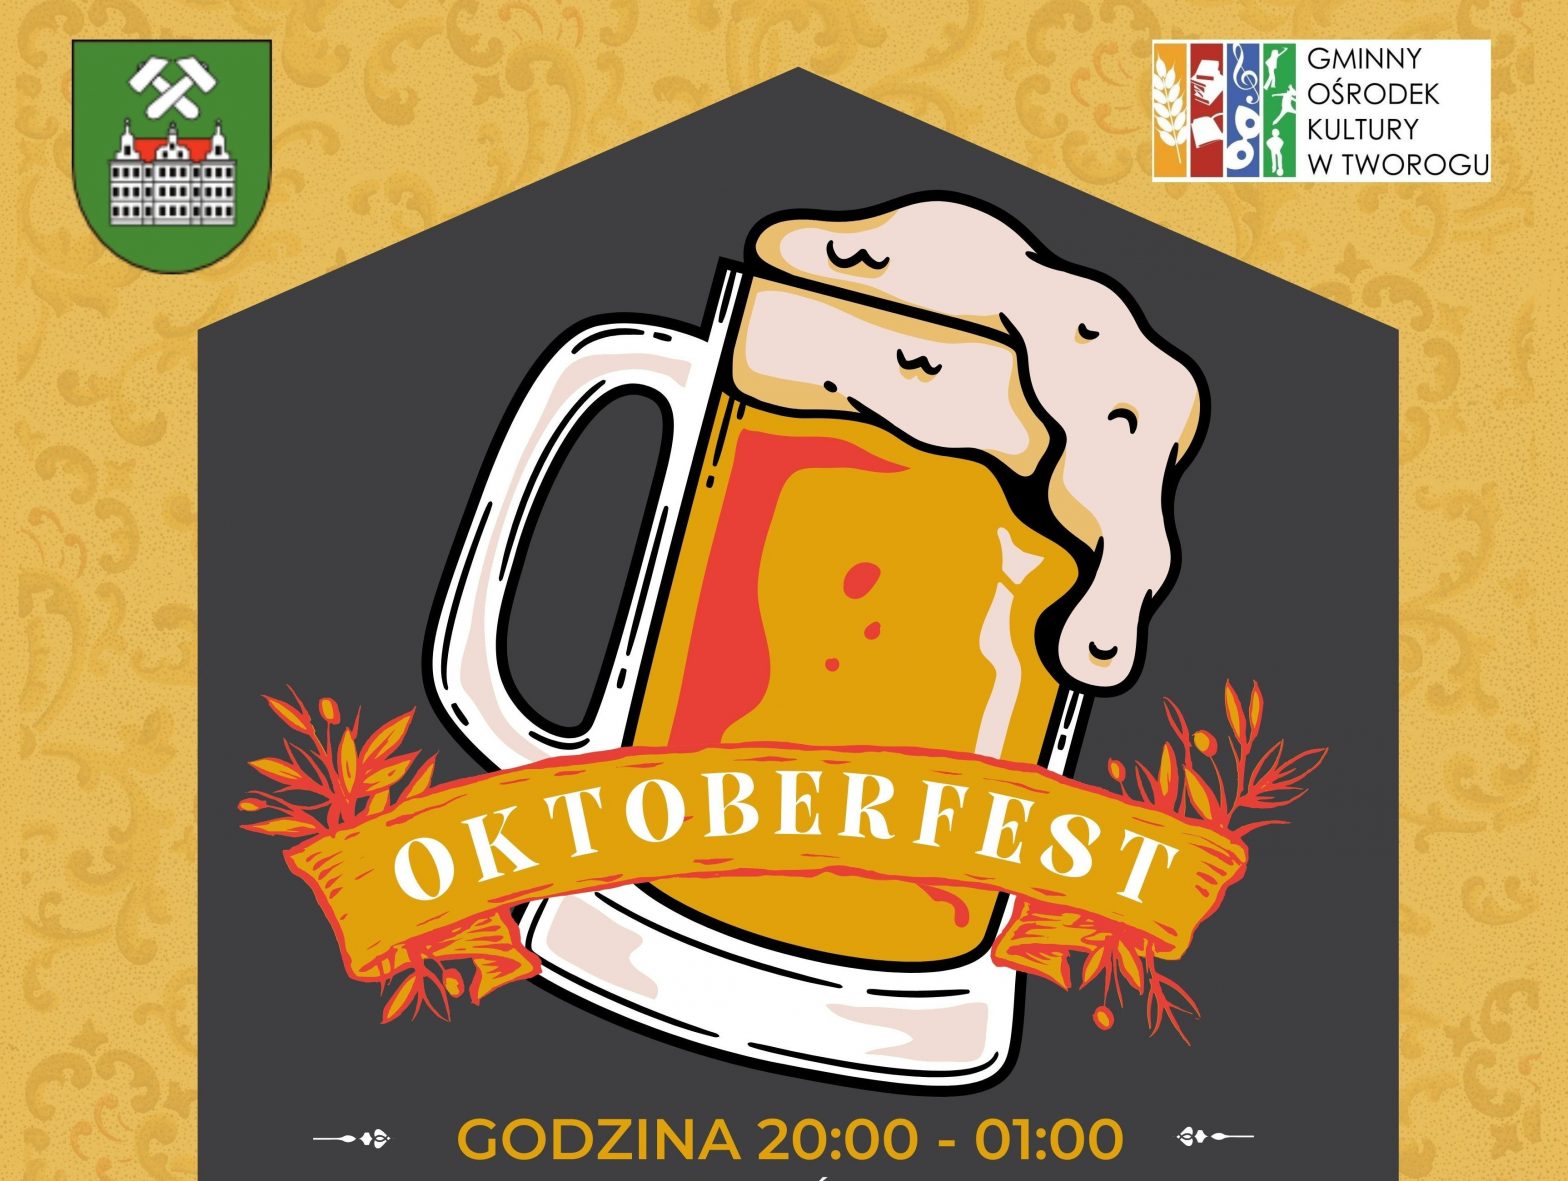 Baner z grafiką przedstawiającą kufel piwa oraz napis okroberfest